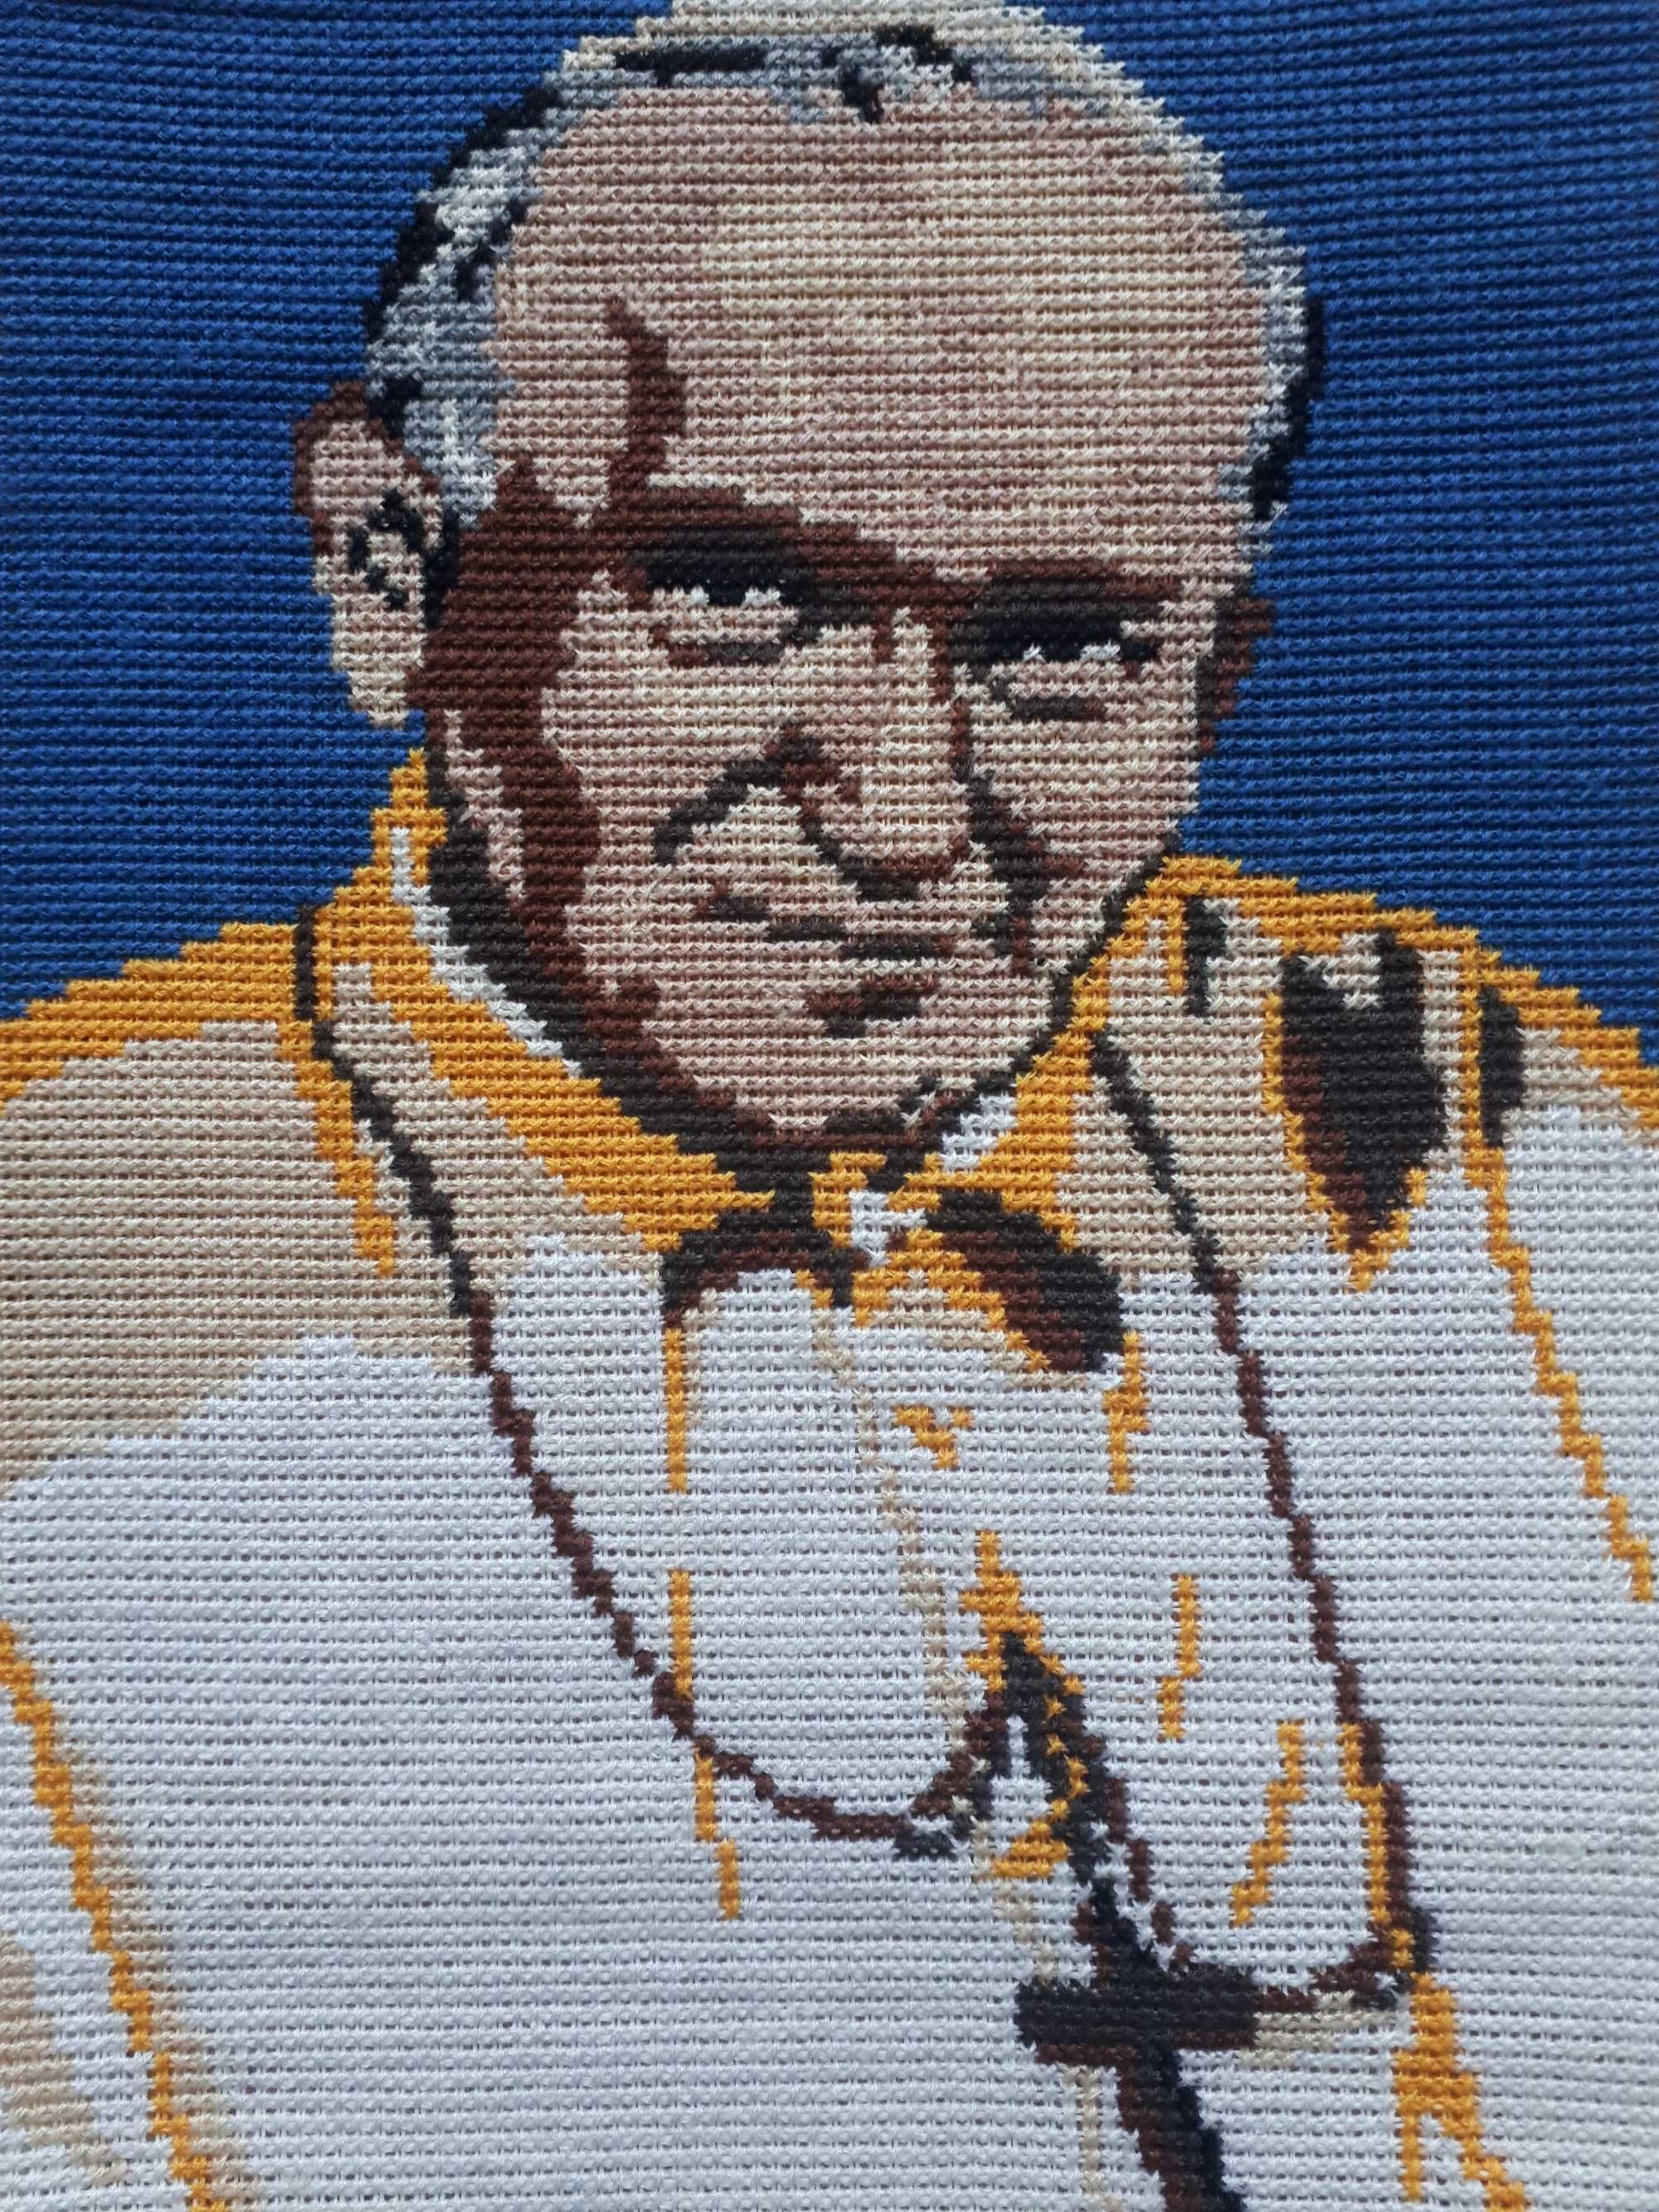 Obraz Jan Paweł II - wymiary 20 x 30 cm, haft krzyżykowy